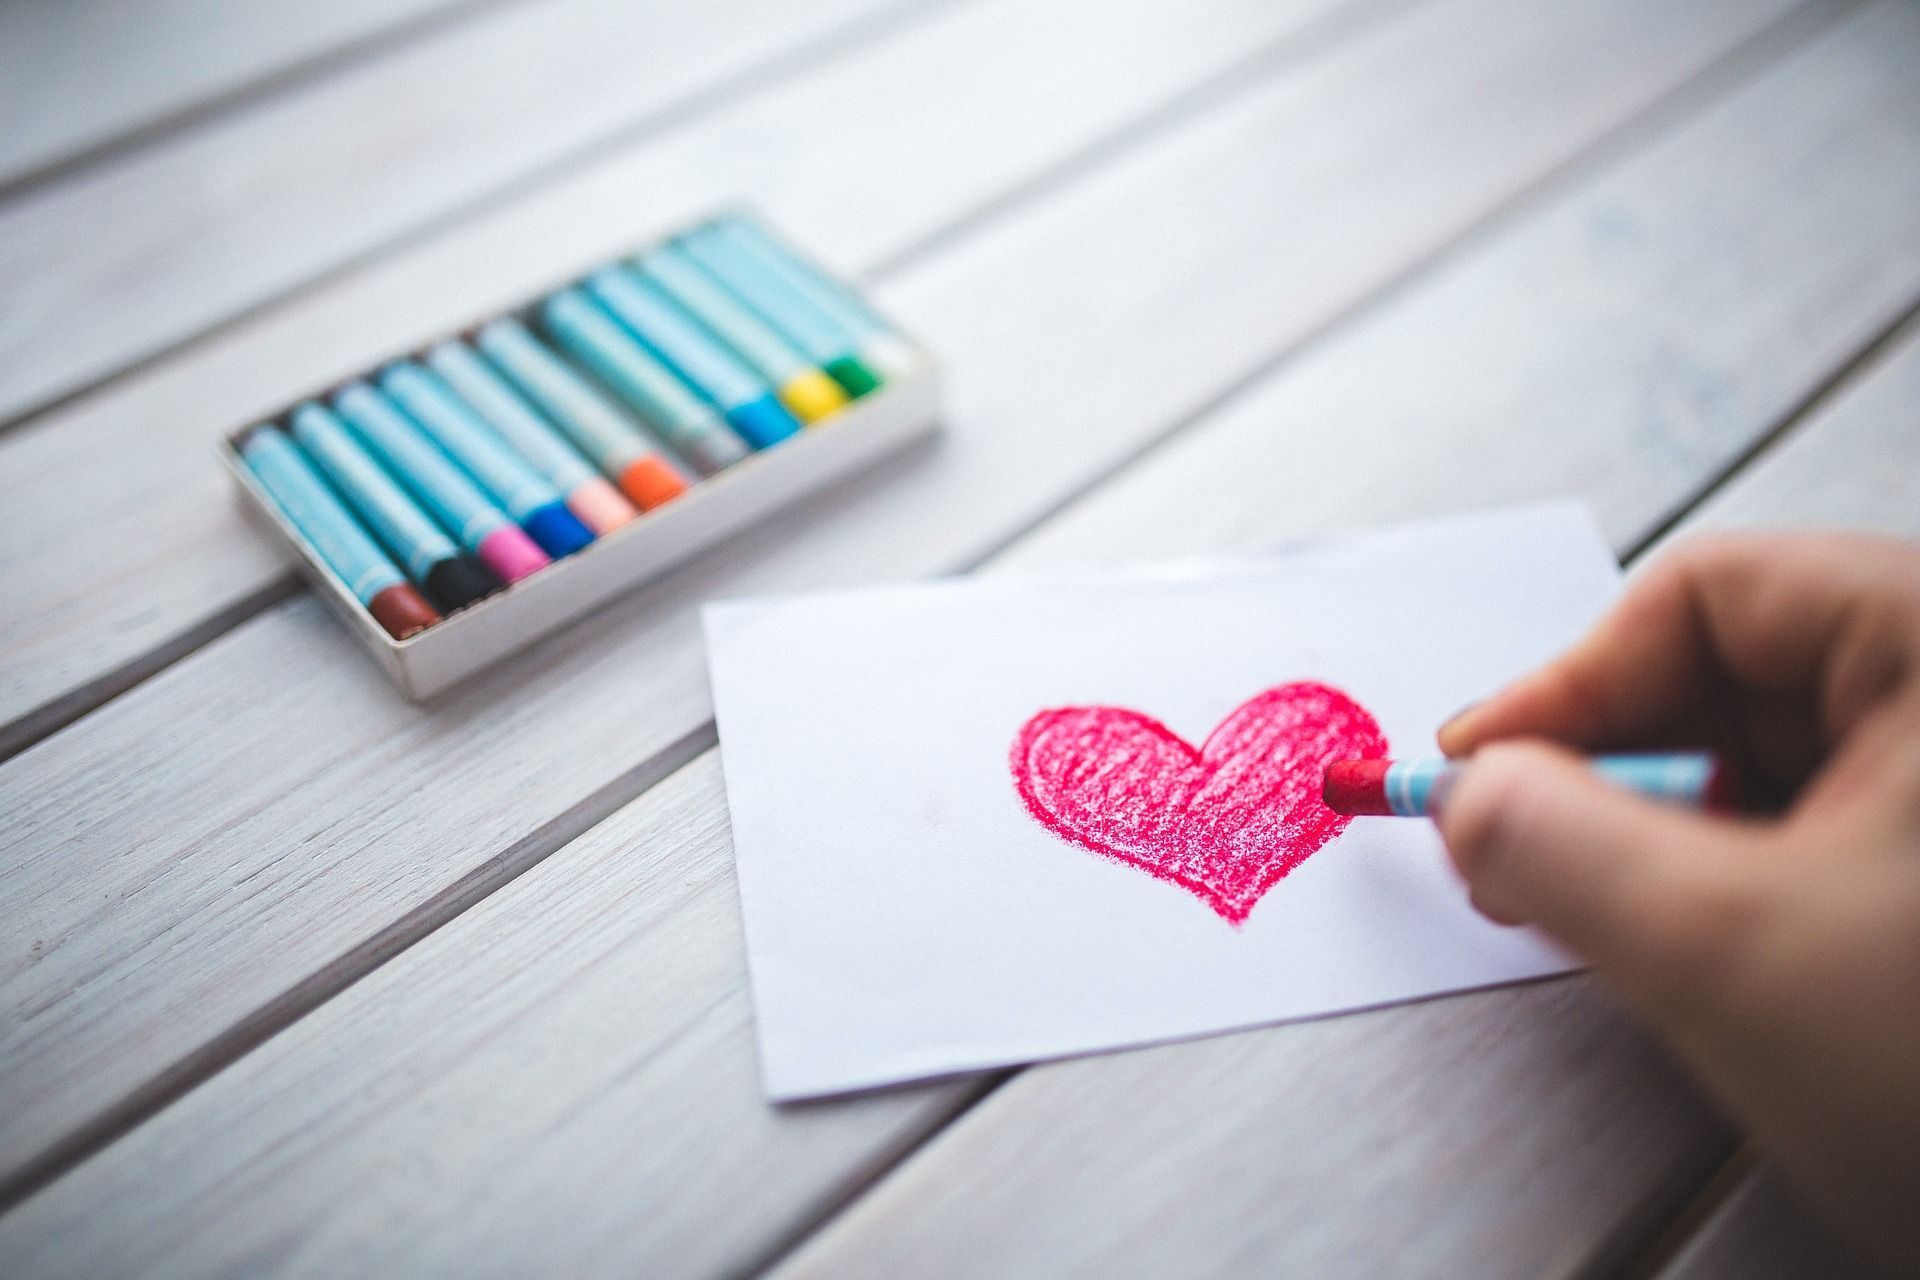 Zeichnen Sie Ihrem Liebsten ein hübsches Motiv auf die Valentinstag-Karte und gestalten Sie sie so ganz individuell. Ein Herz ist zwar passend, aber natürlich nicht Pflicht.